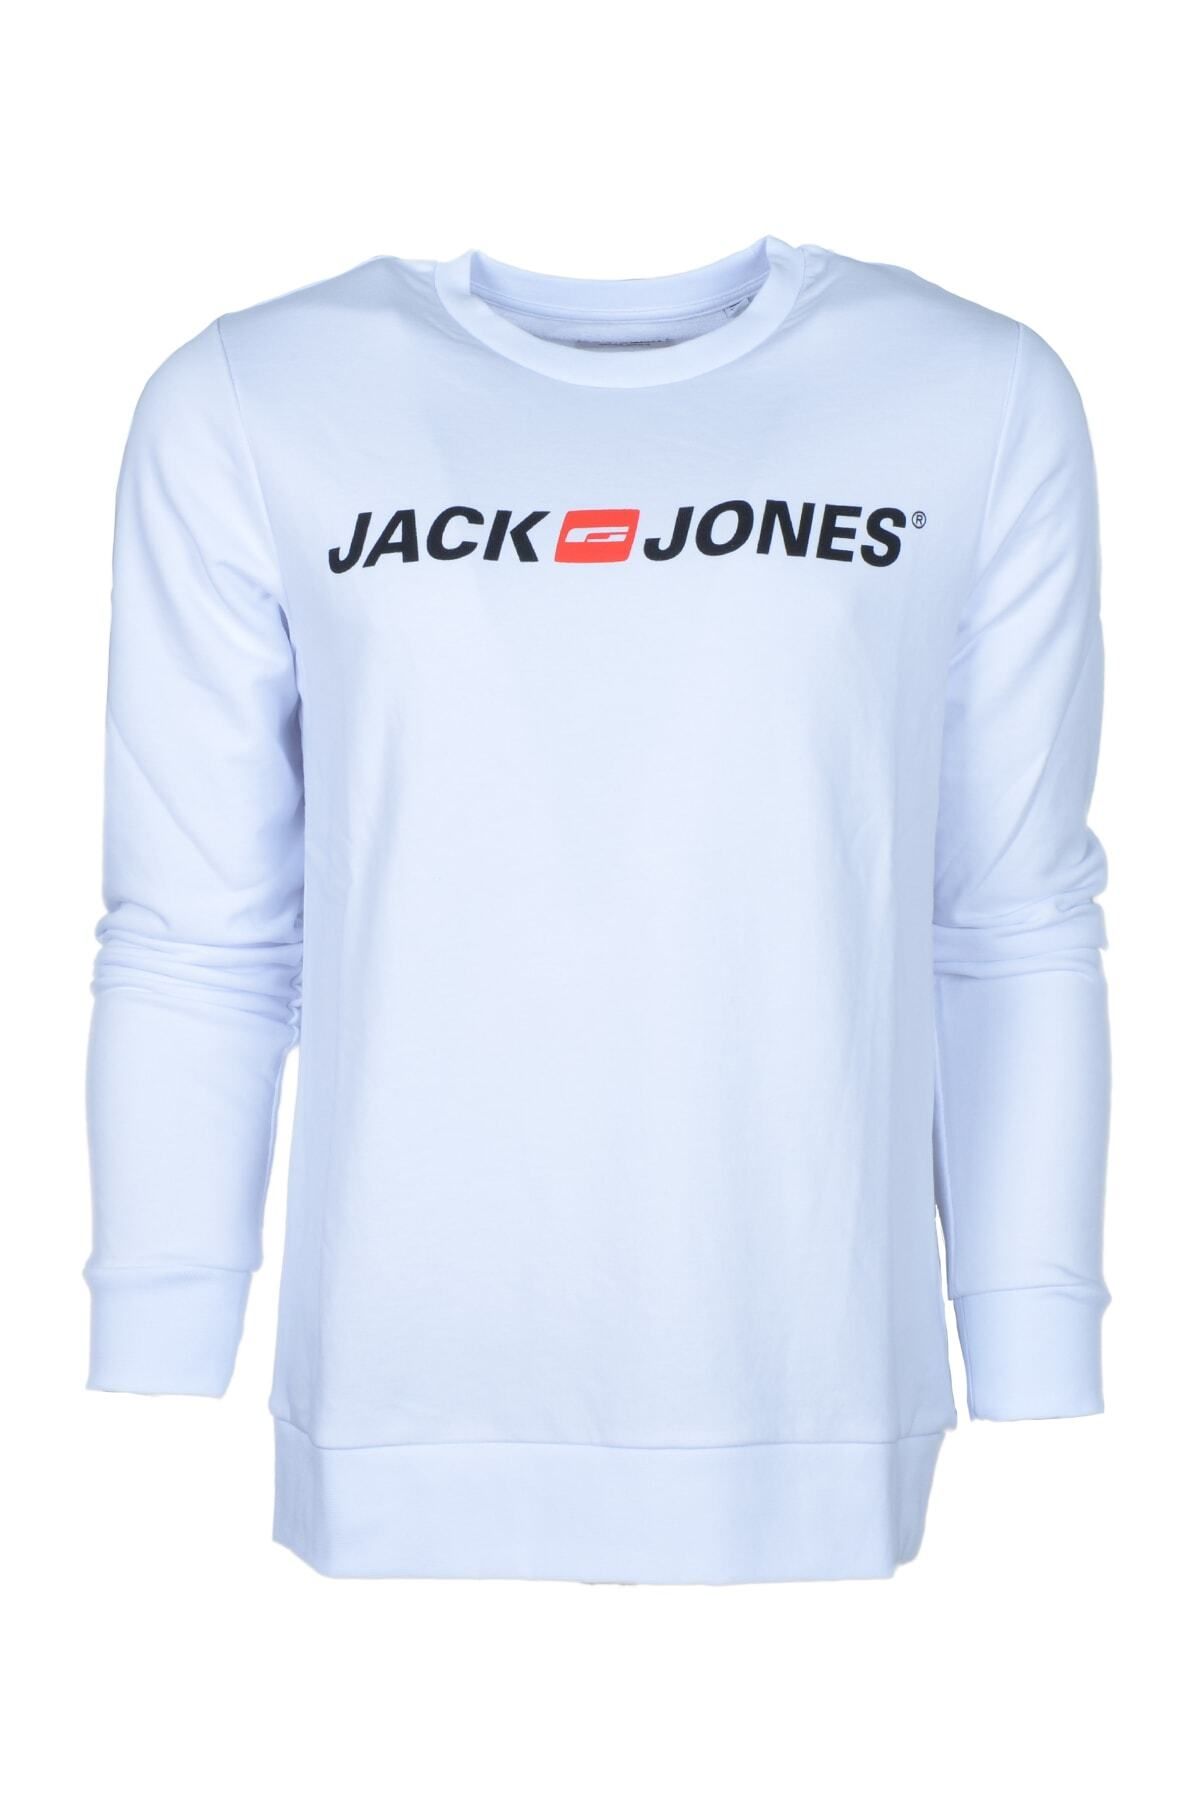 Jack & Jones Erkek Beyaz Sweatshirt 12190771-beyaz